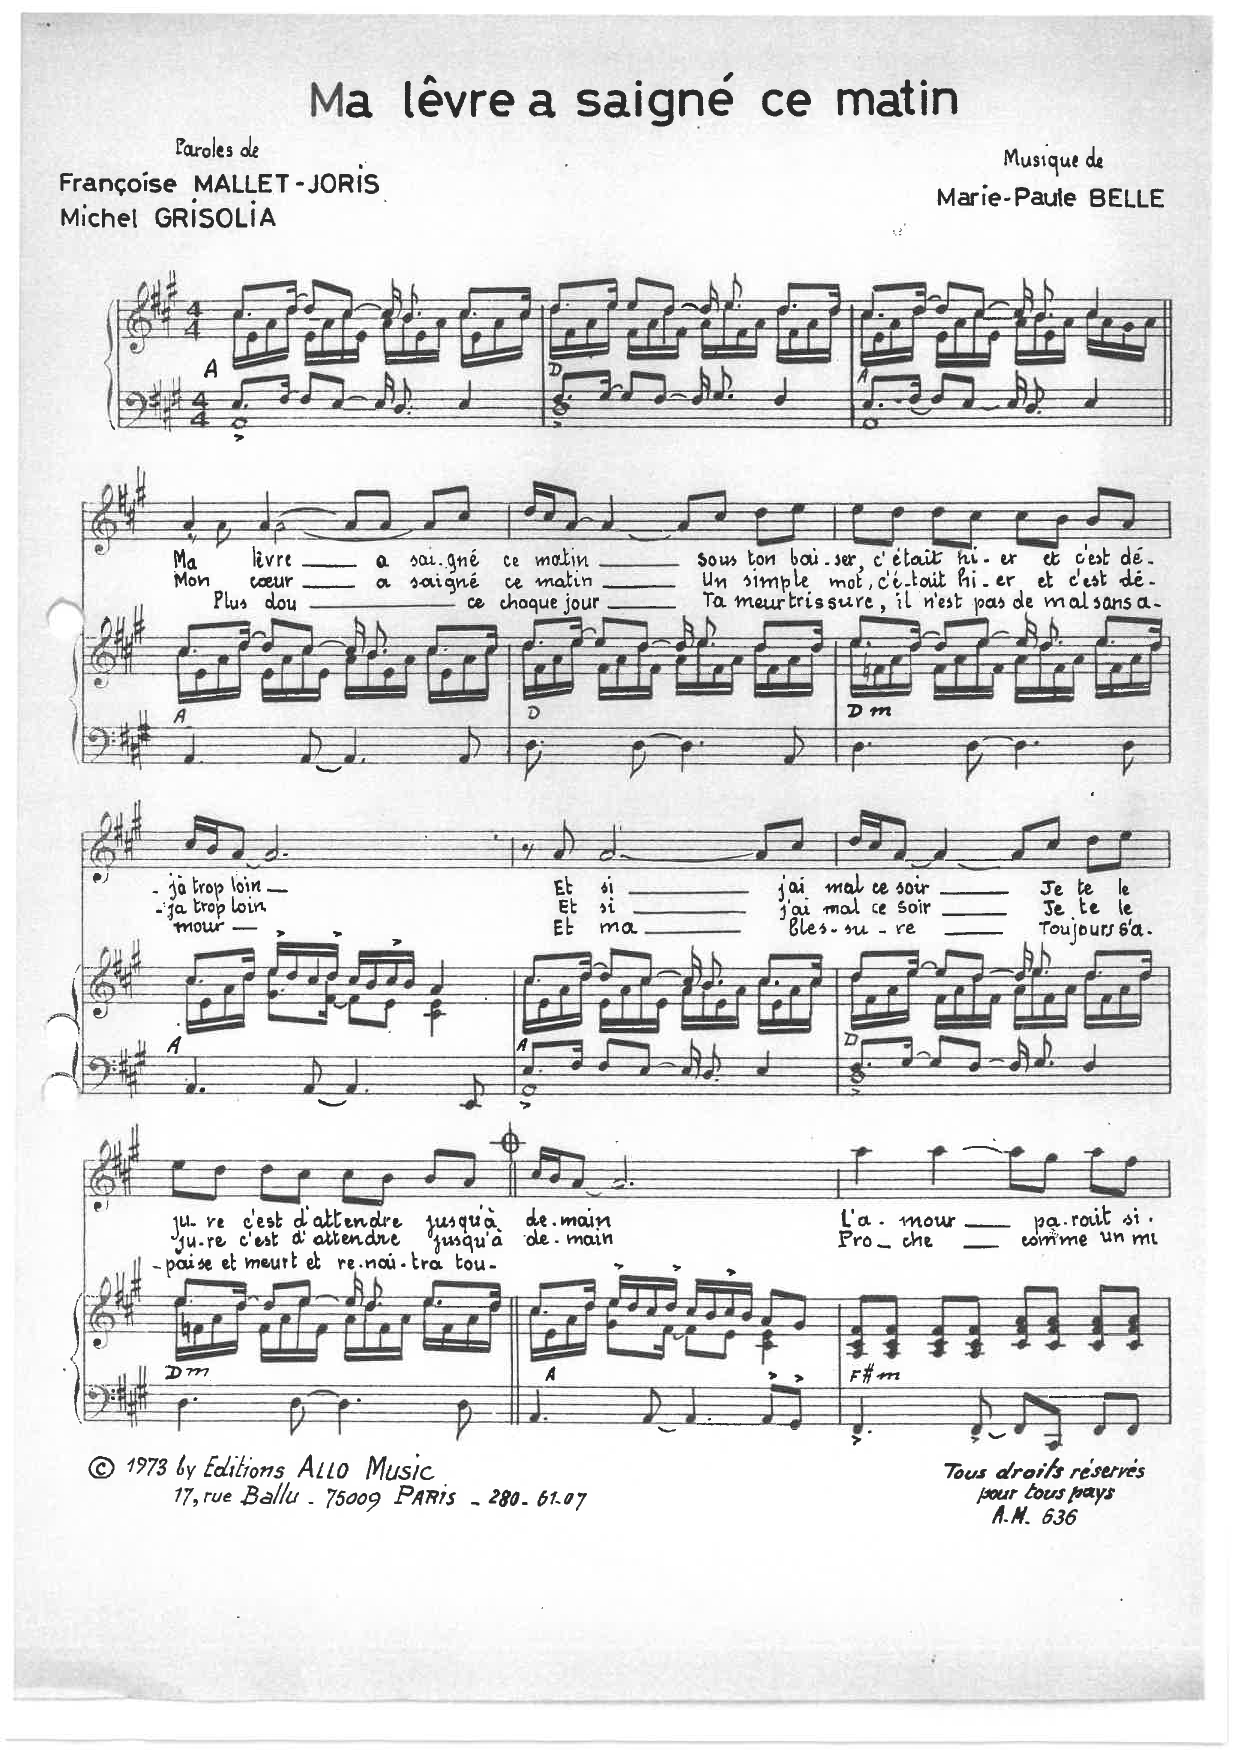 Michel Grisolia, Françoise Mallet-Joris, Marie Paule Belle Ma Levre A Saigne Ce Matin Sheet Music Notes & Chords for Piano & Vocal - Download or Print PDF